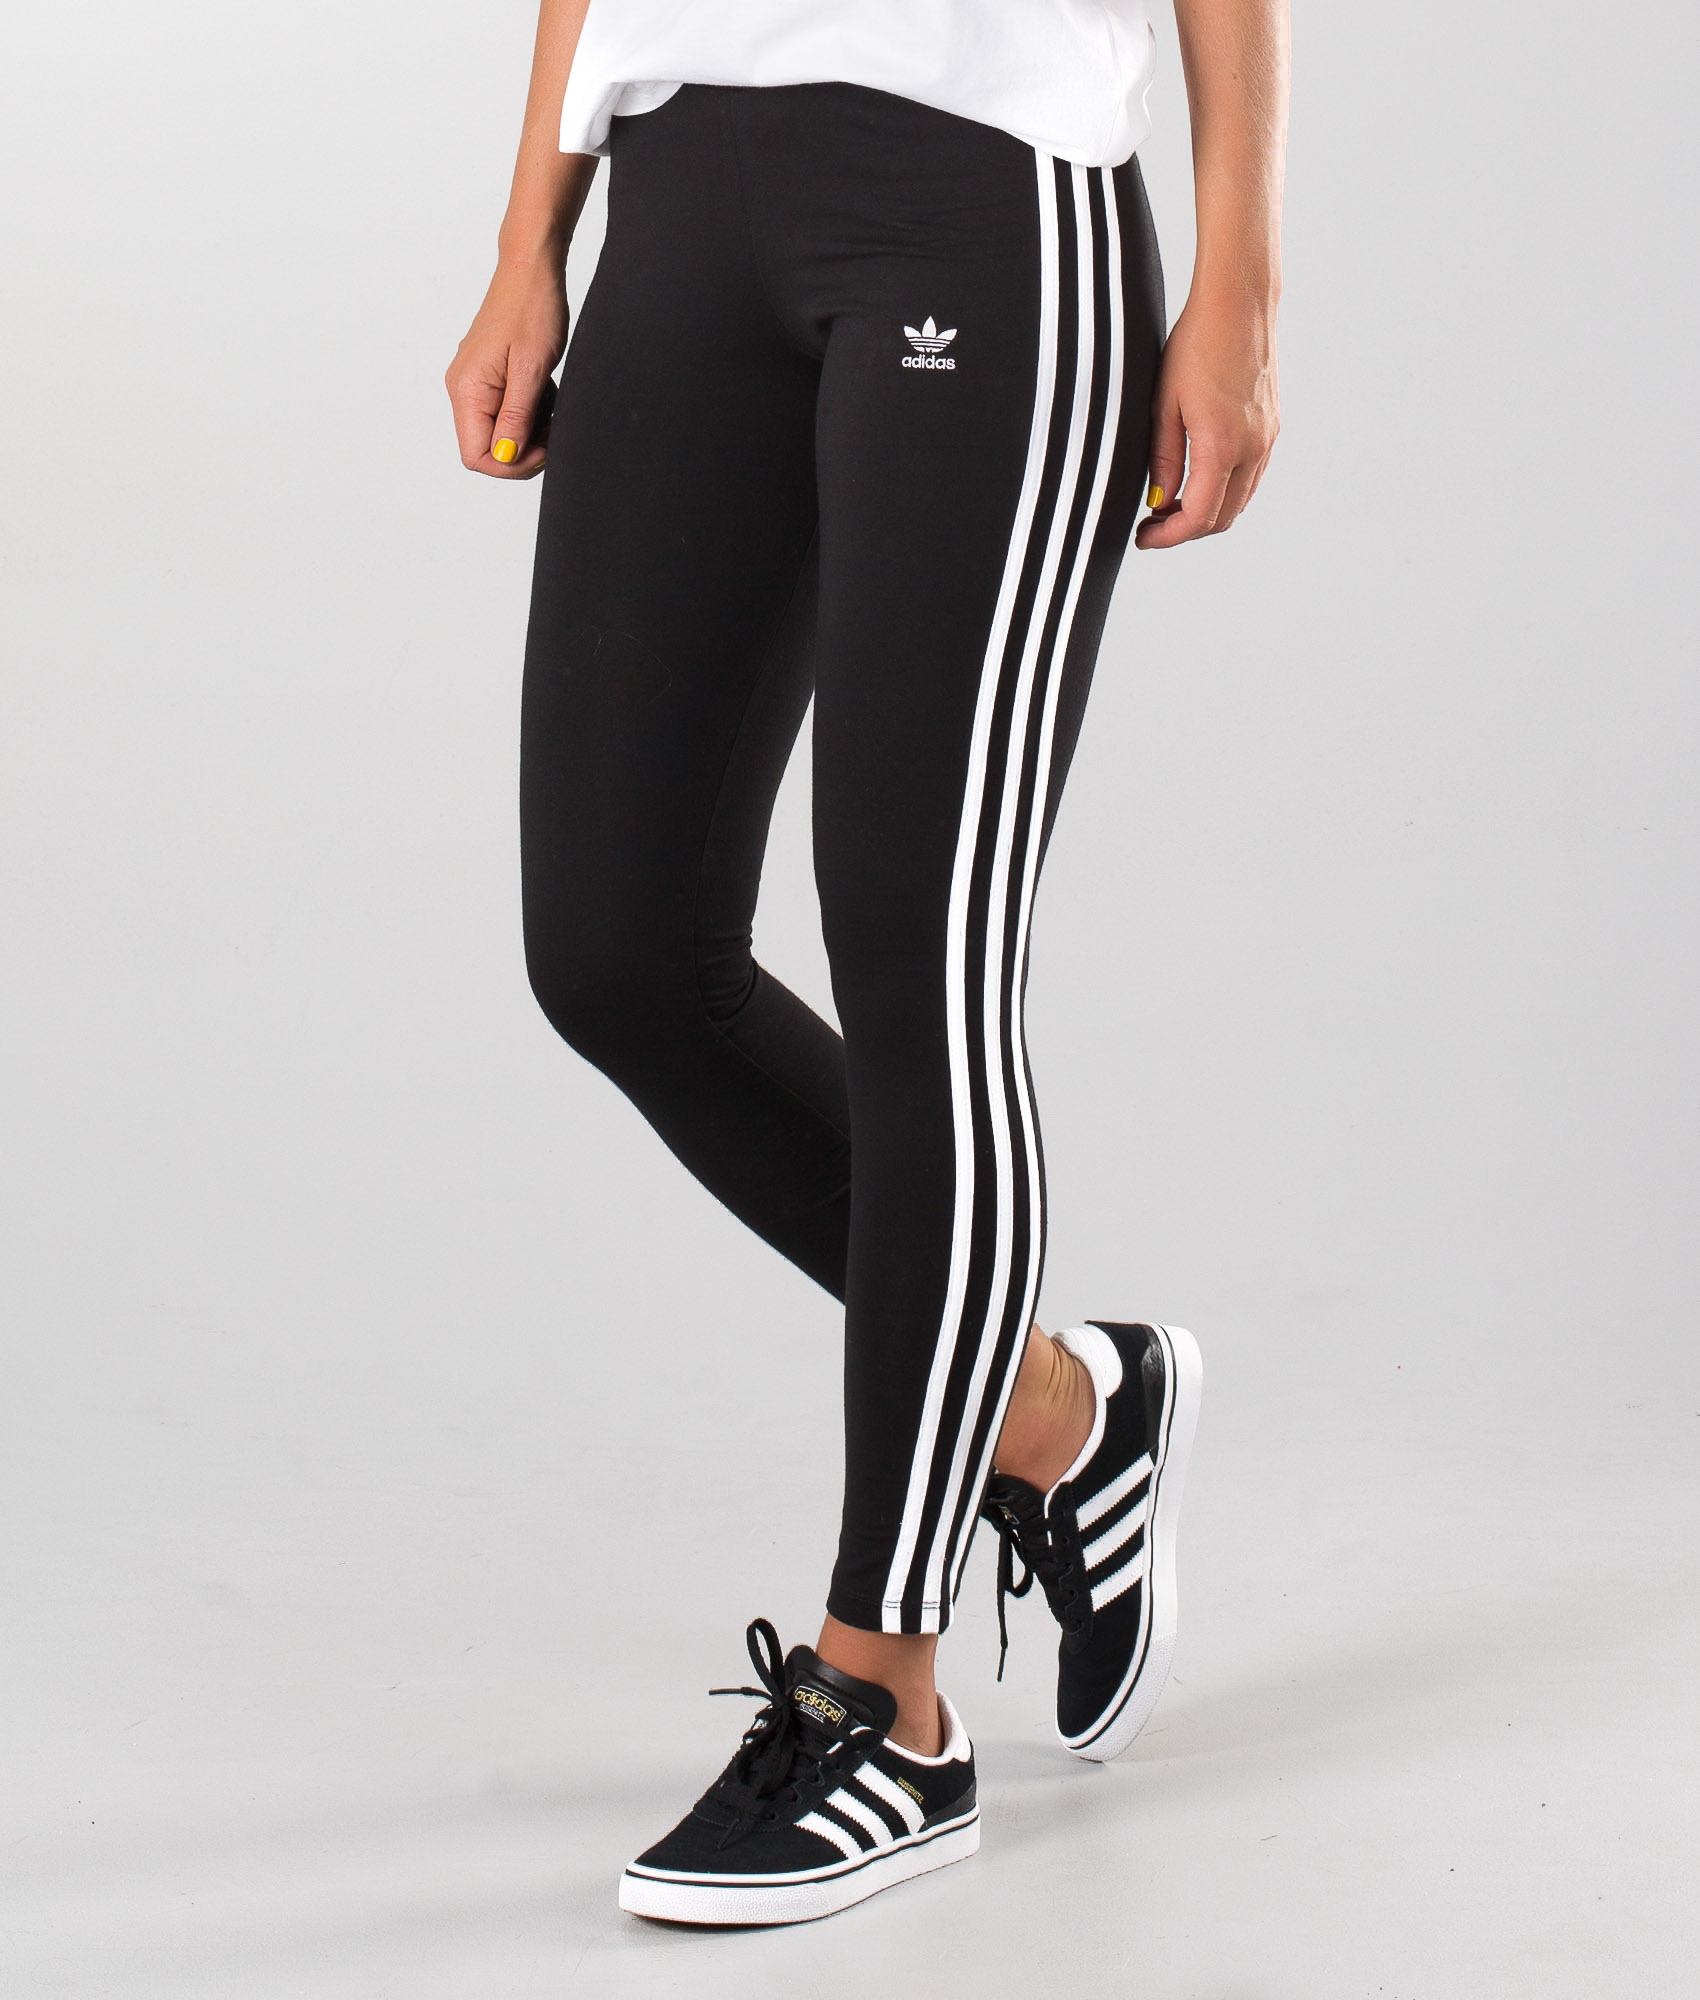 كريم تبييض الابط Adidas Originals 3-Stripes Leggings Black كريم تبييض الابط